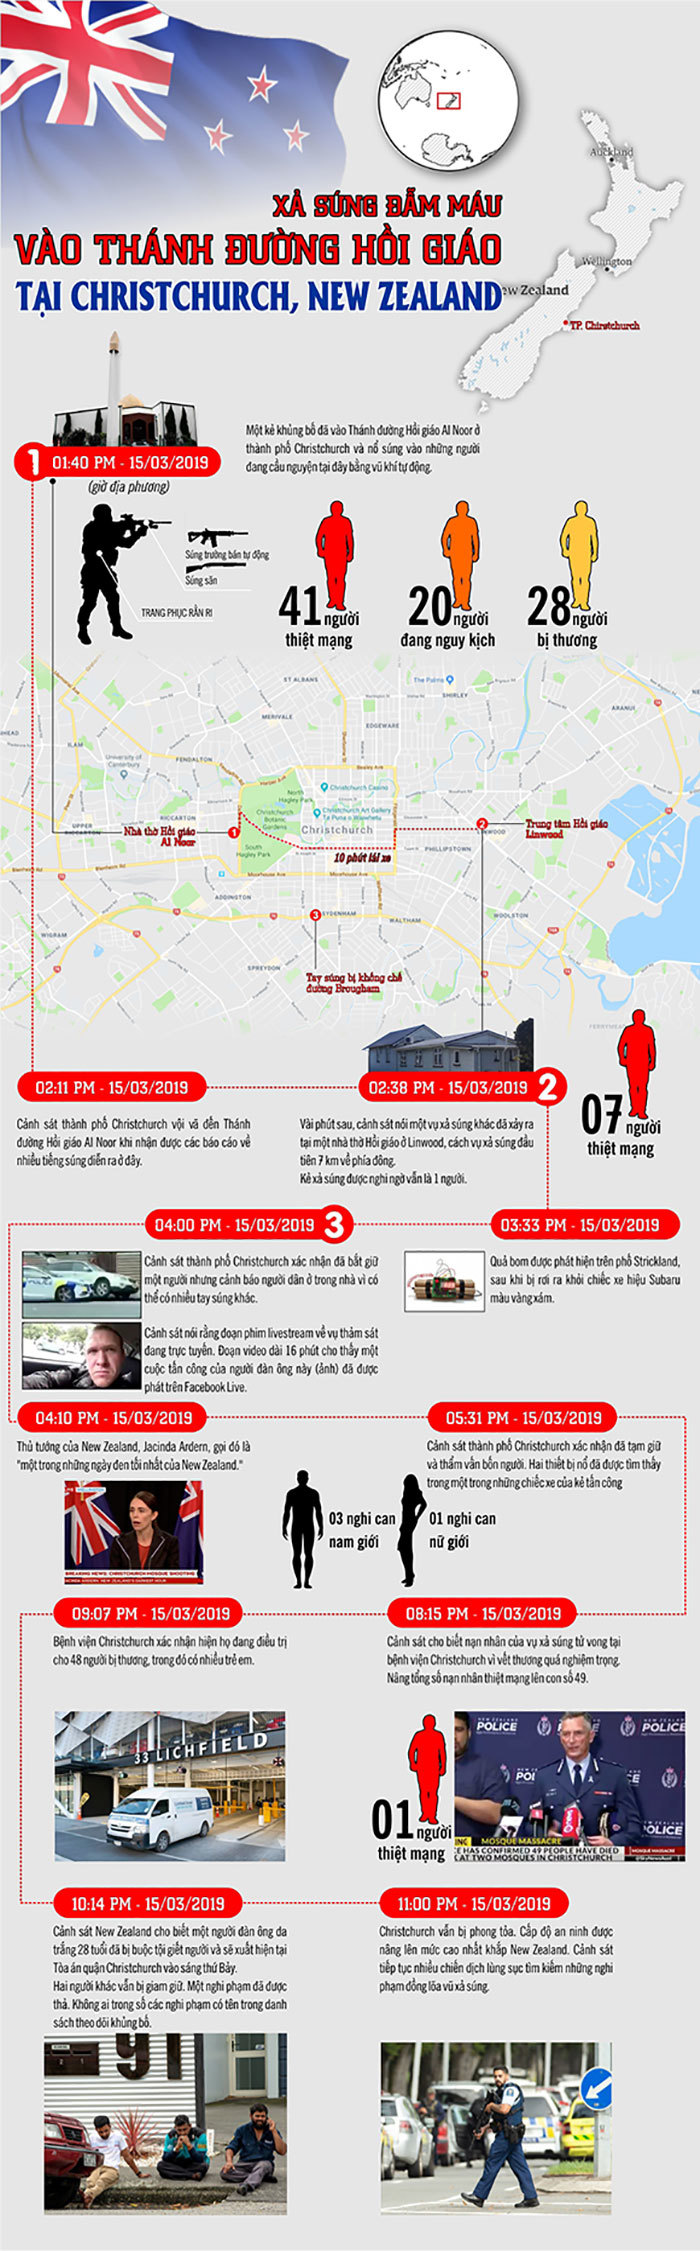 [Infographic] Toàn cảnh vụ xả súng đẫm máu vào Thánh đường Hồi giáo - Ảnh 1